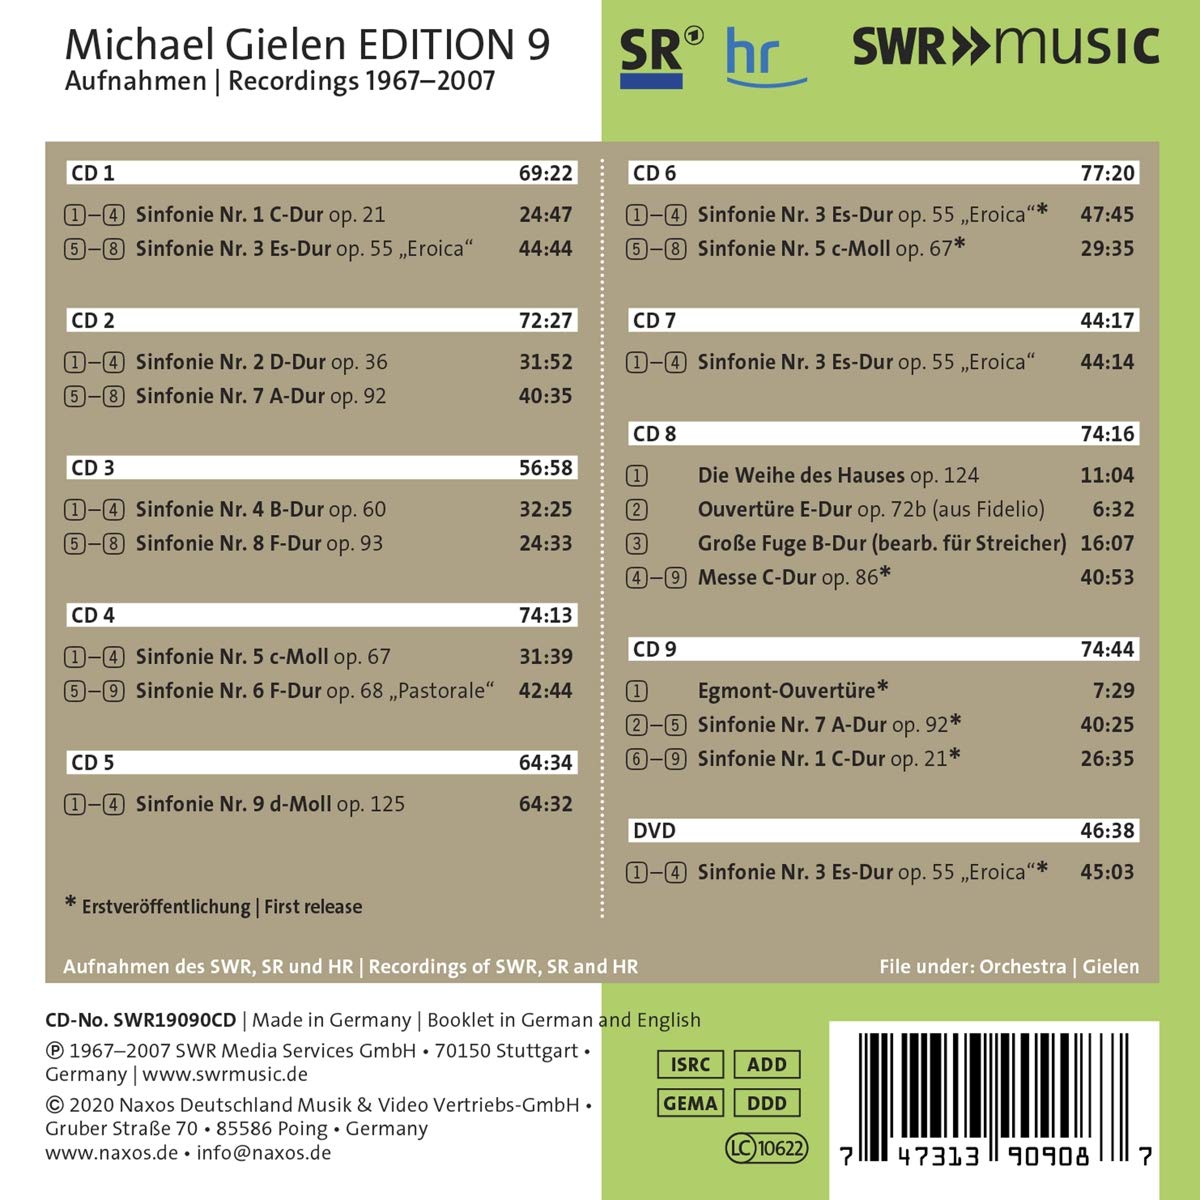 미하엘 길렌 에디션 9집 - 베토벤: 교향곡 전곡 (Michael Gielen Edition Vol. 9 1967-2007) 